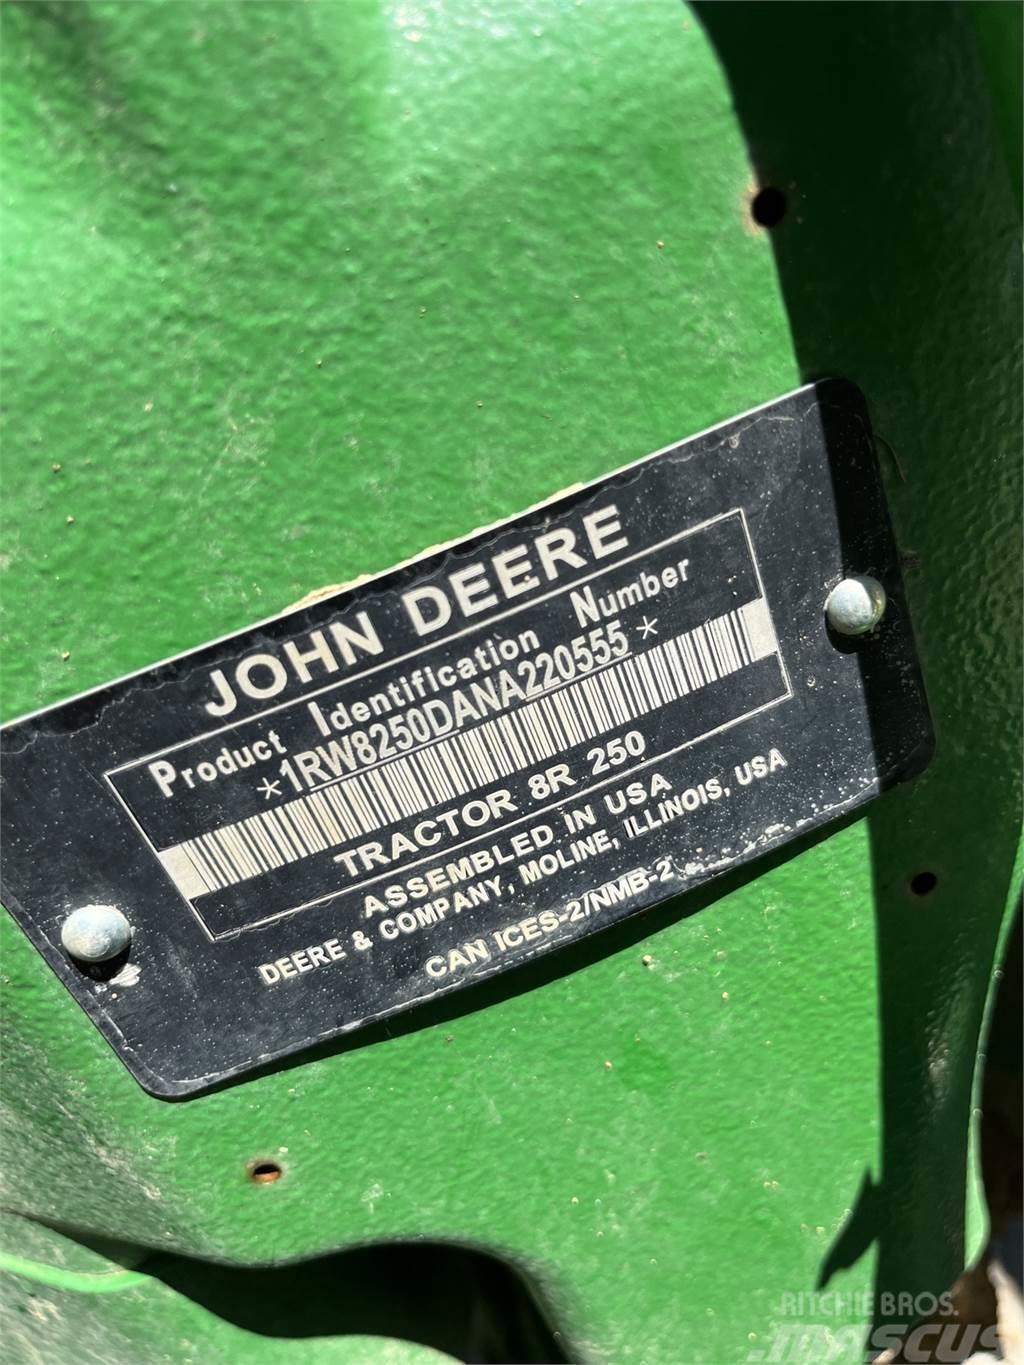 John Deere 8R 250 Traktoren